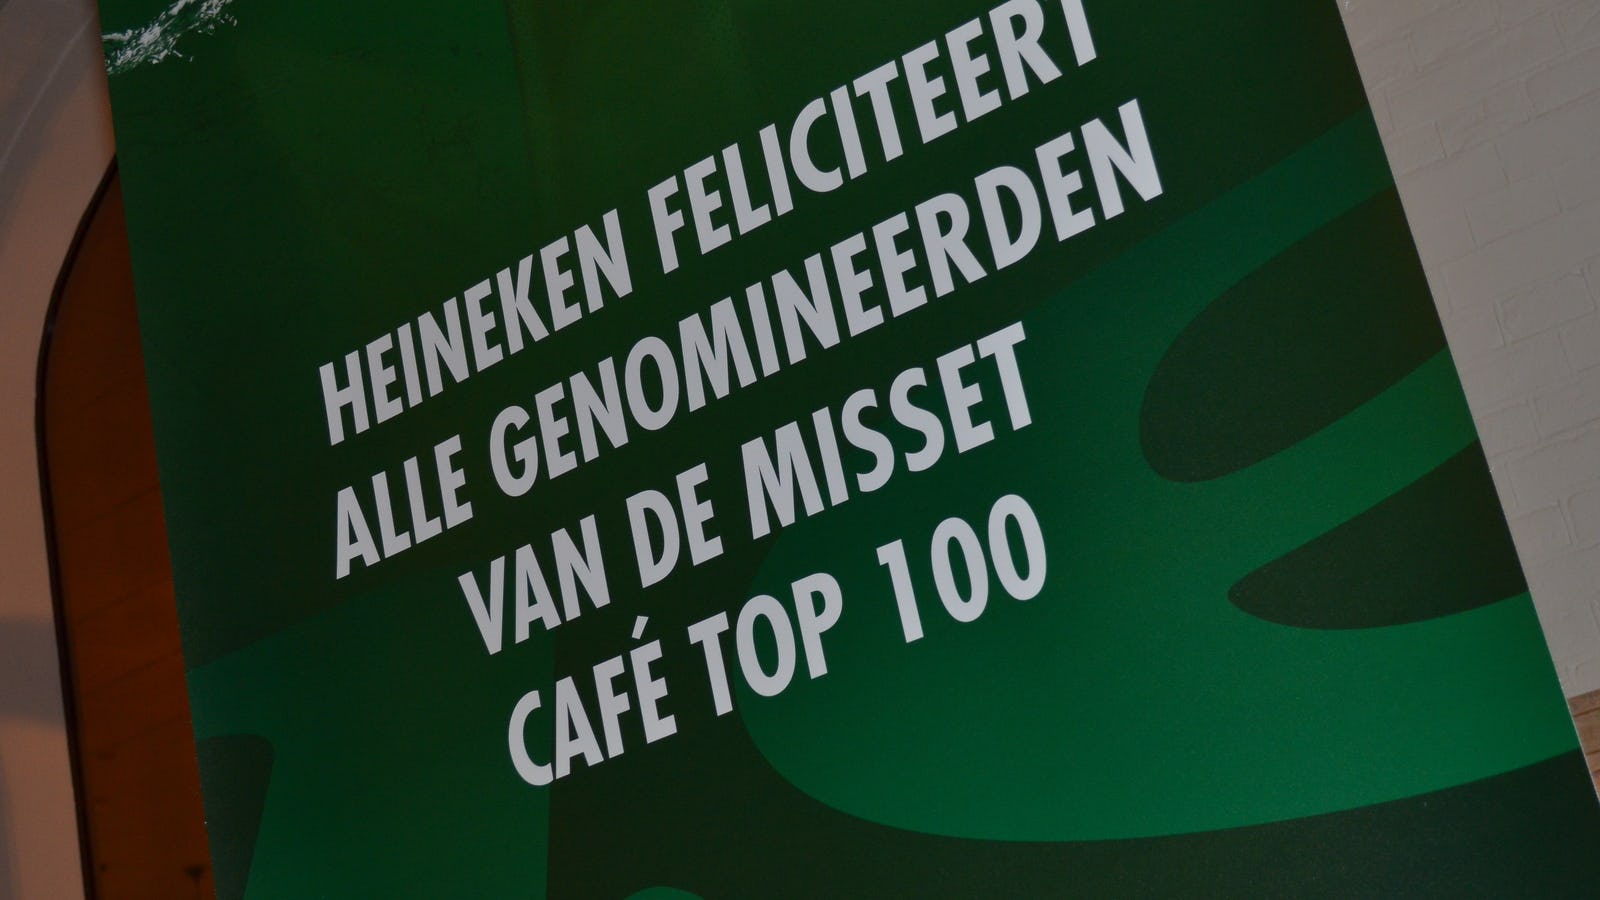 Café Top 100 2015: de Aanraders